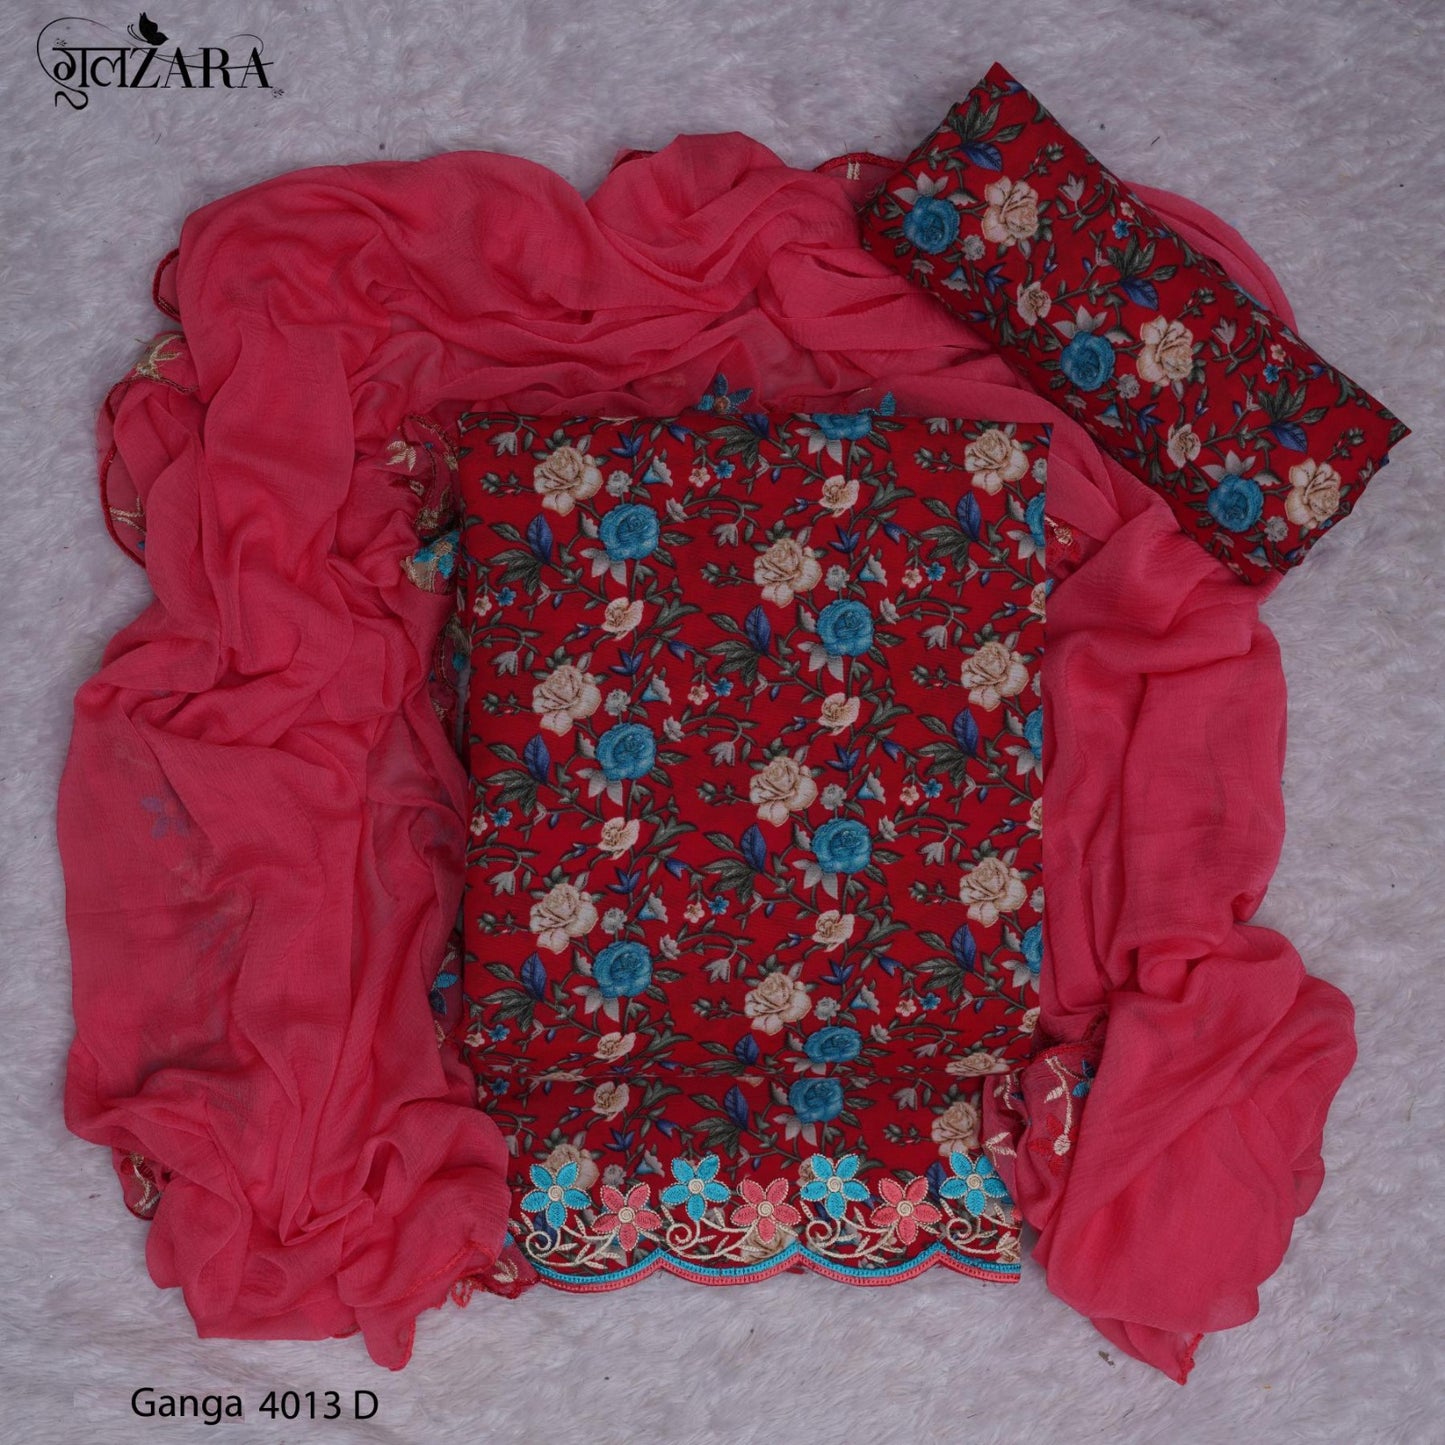 Ganga-4013 Gulzara Cotton Salwar Suits